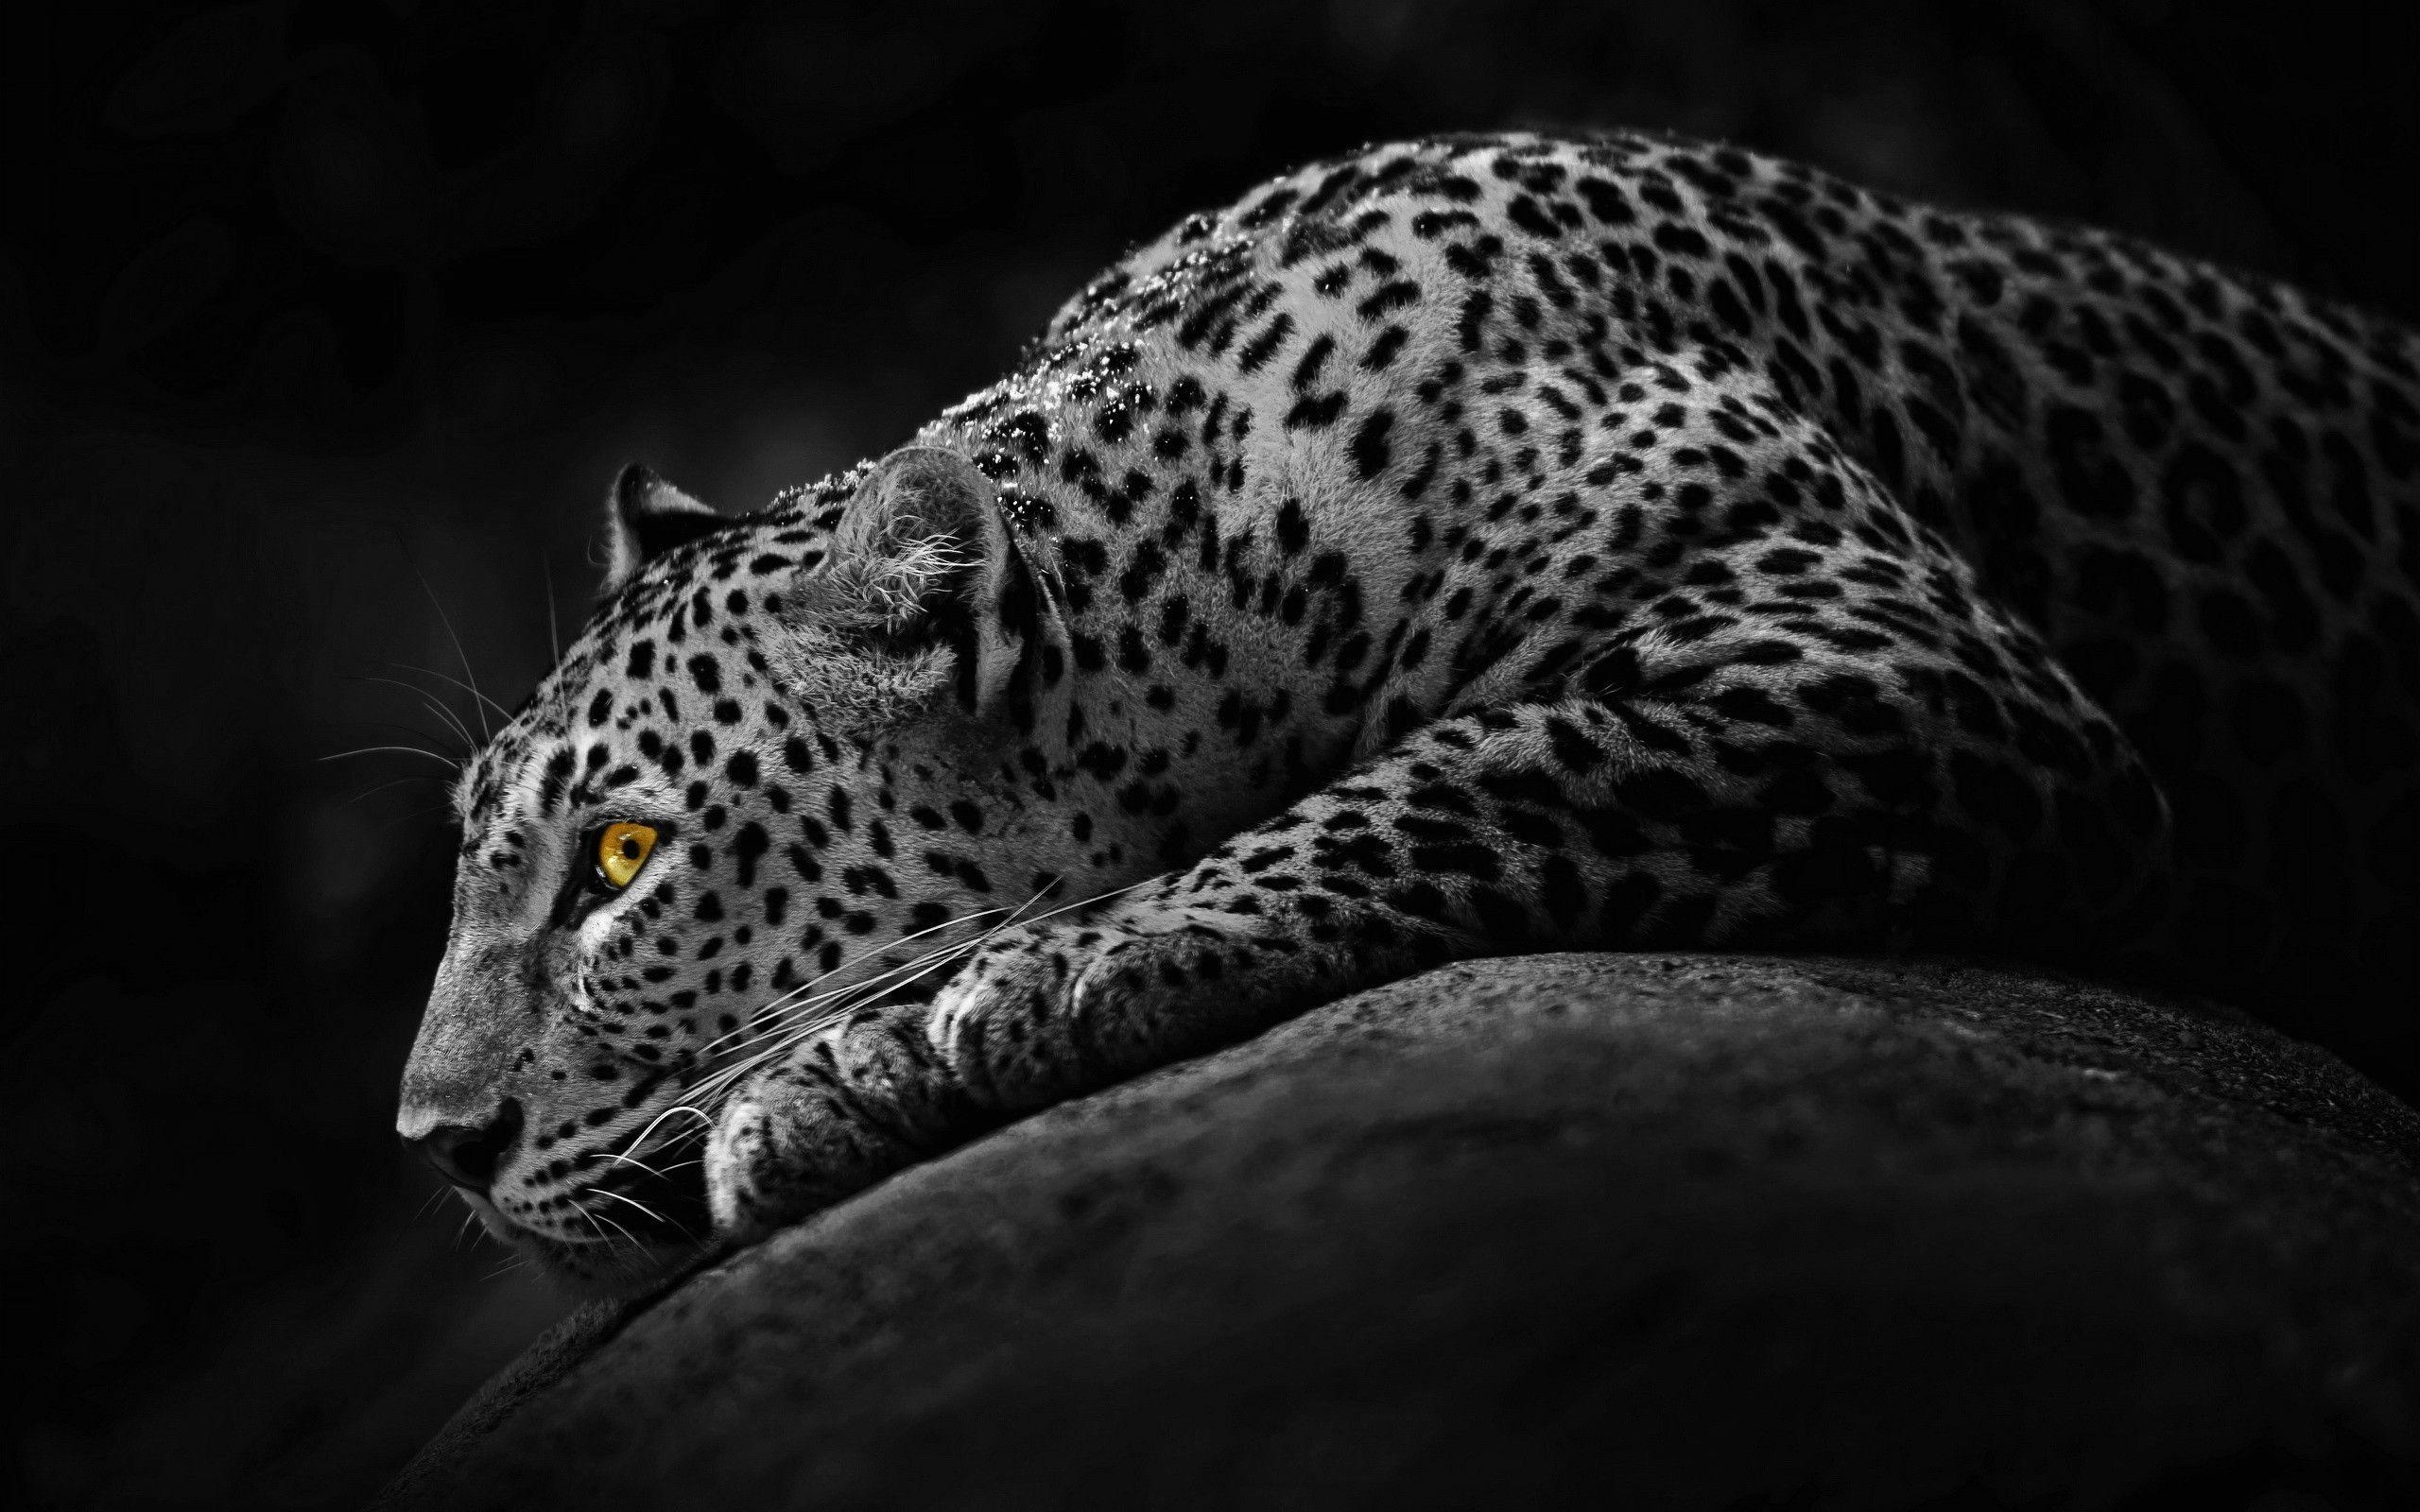 yellow eyes jaguar image